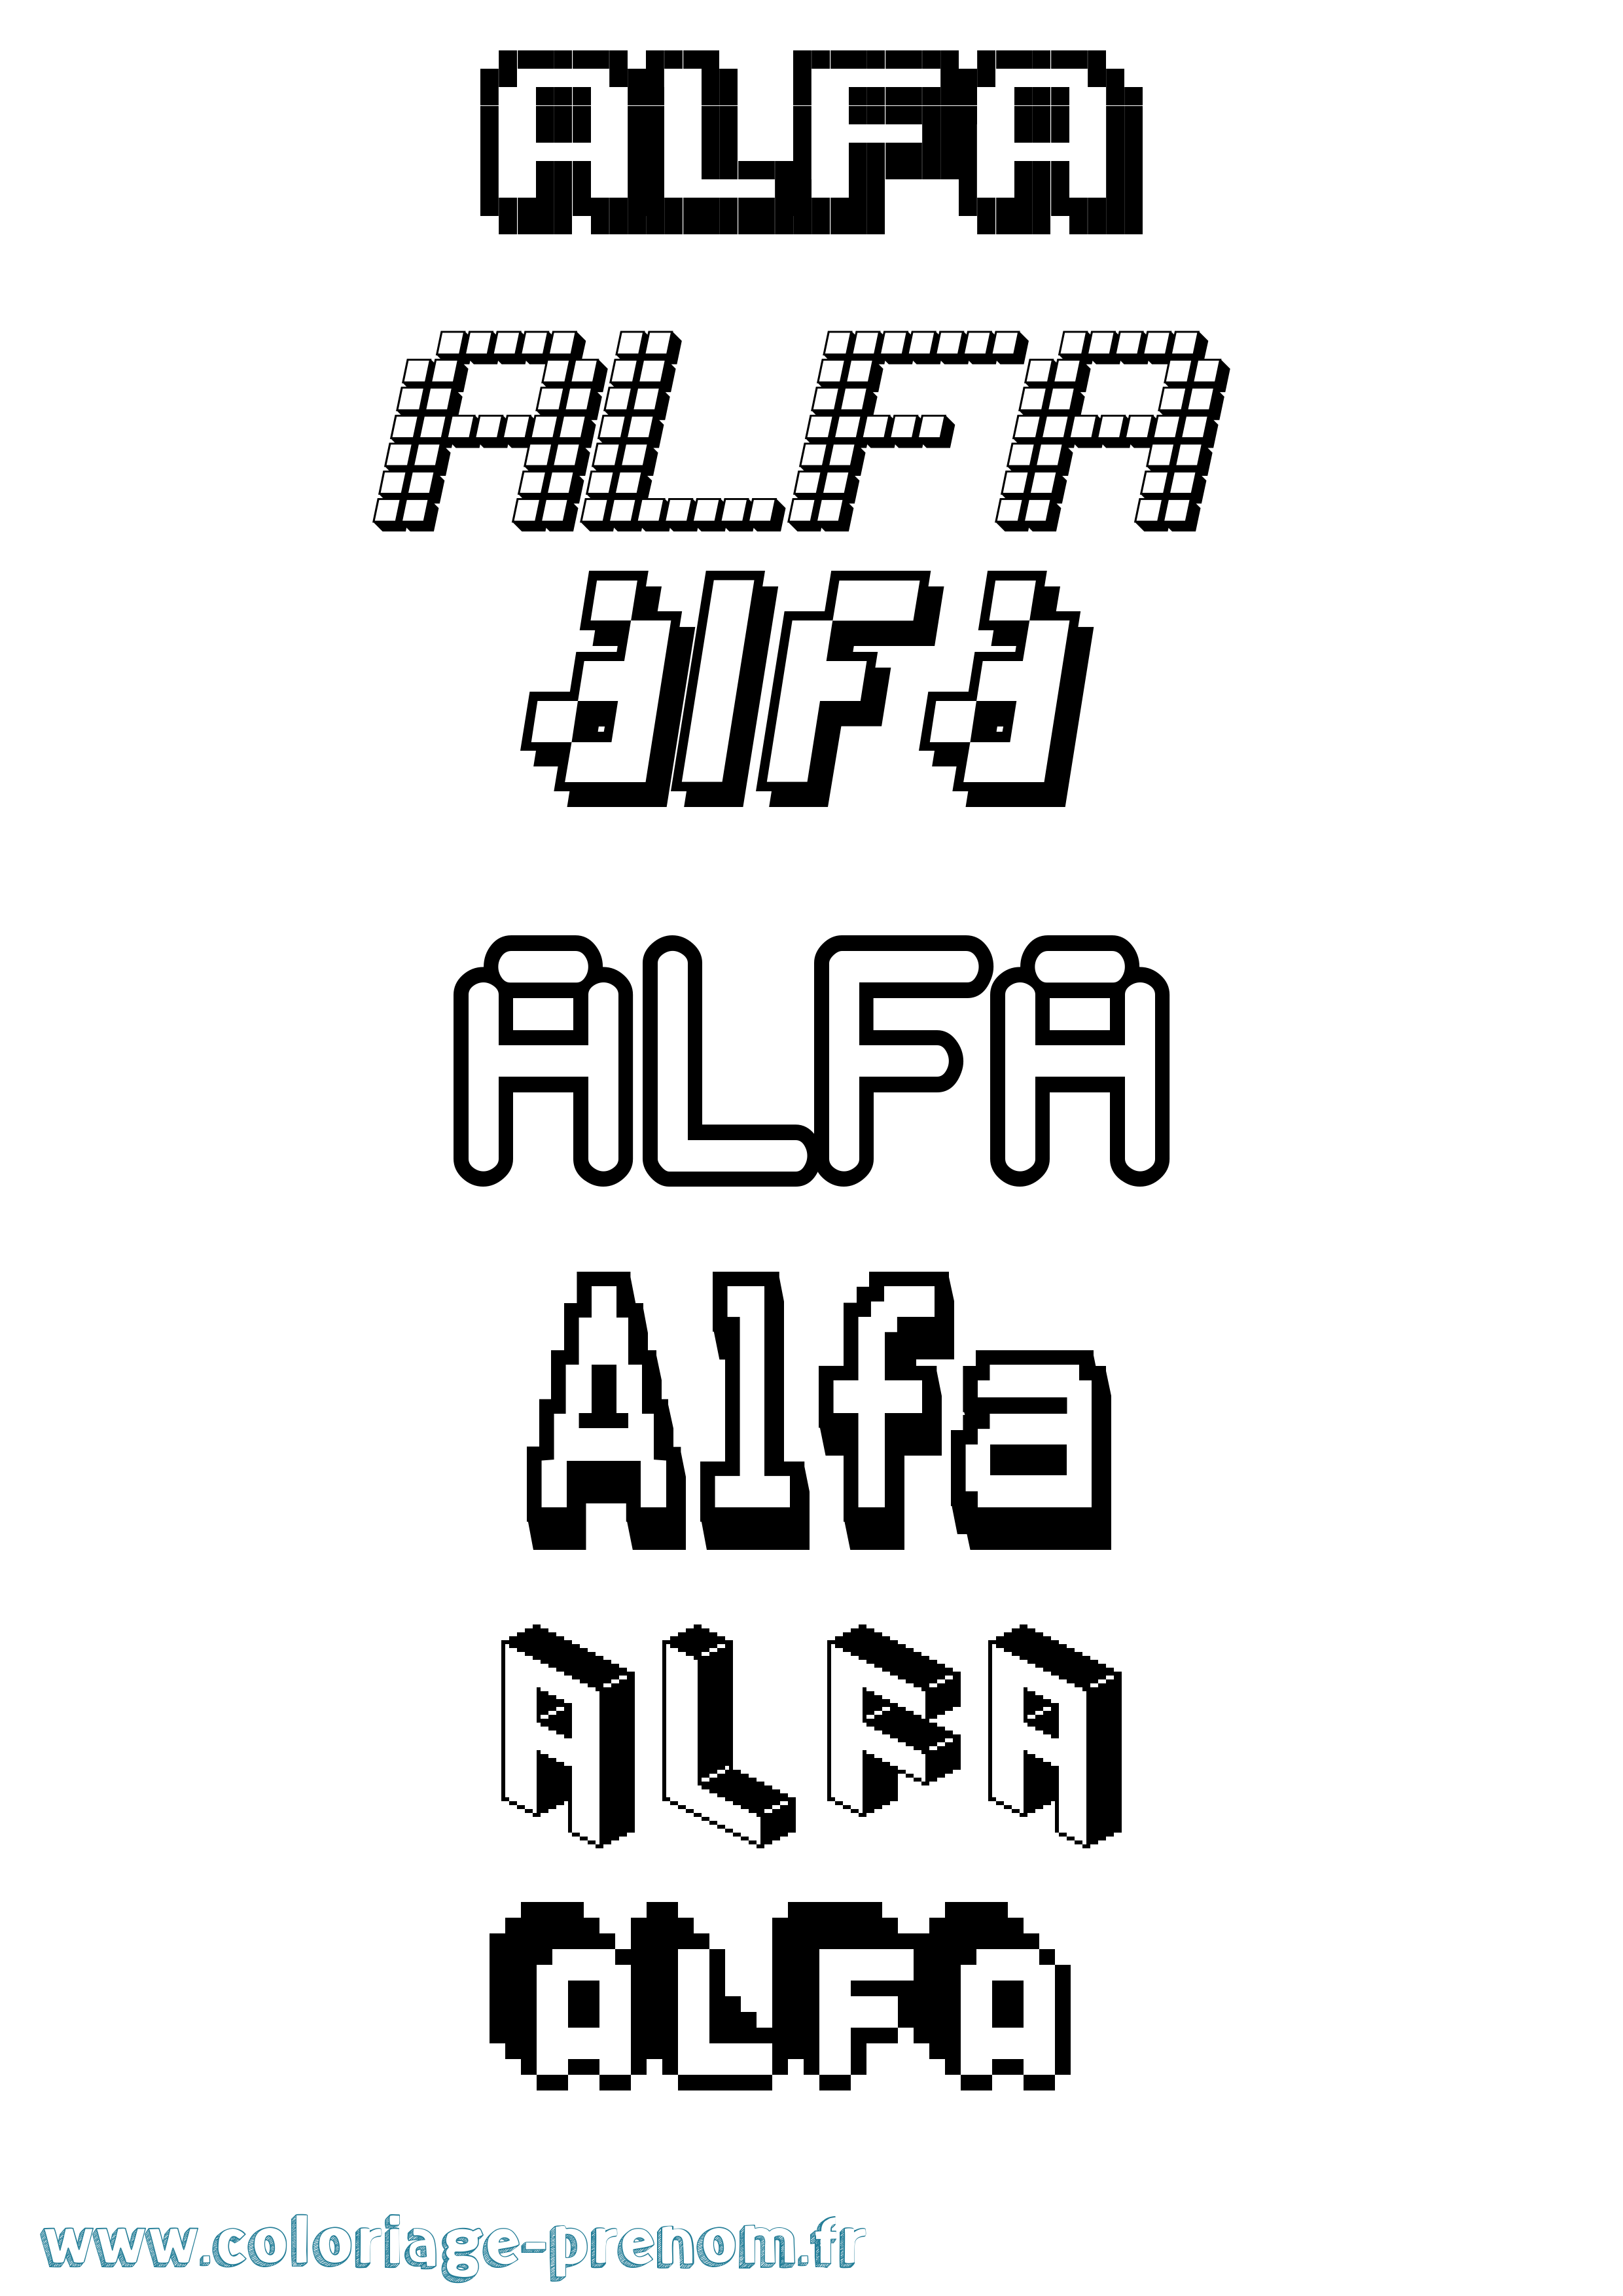 Coloriage prénom Alfa Pixel